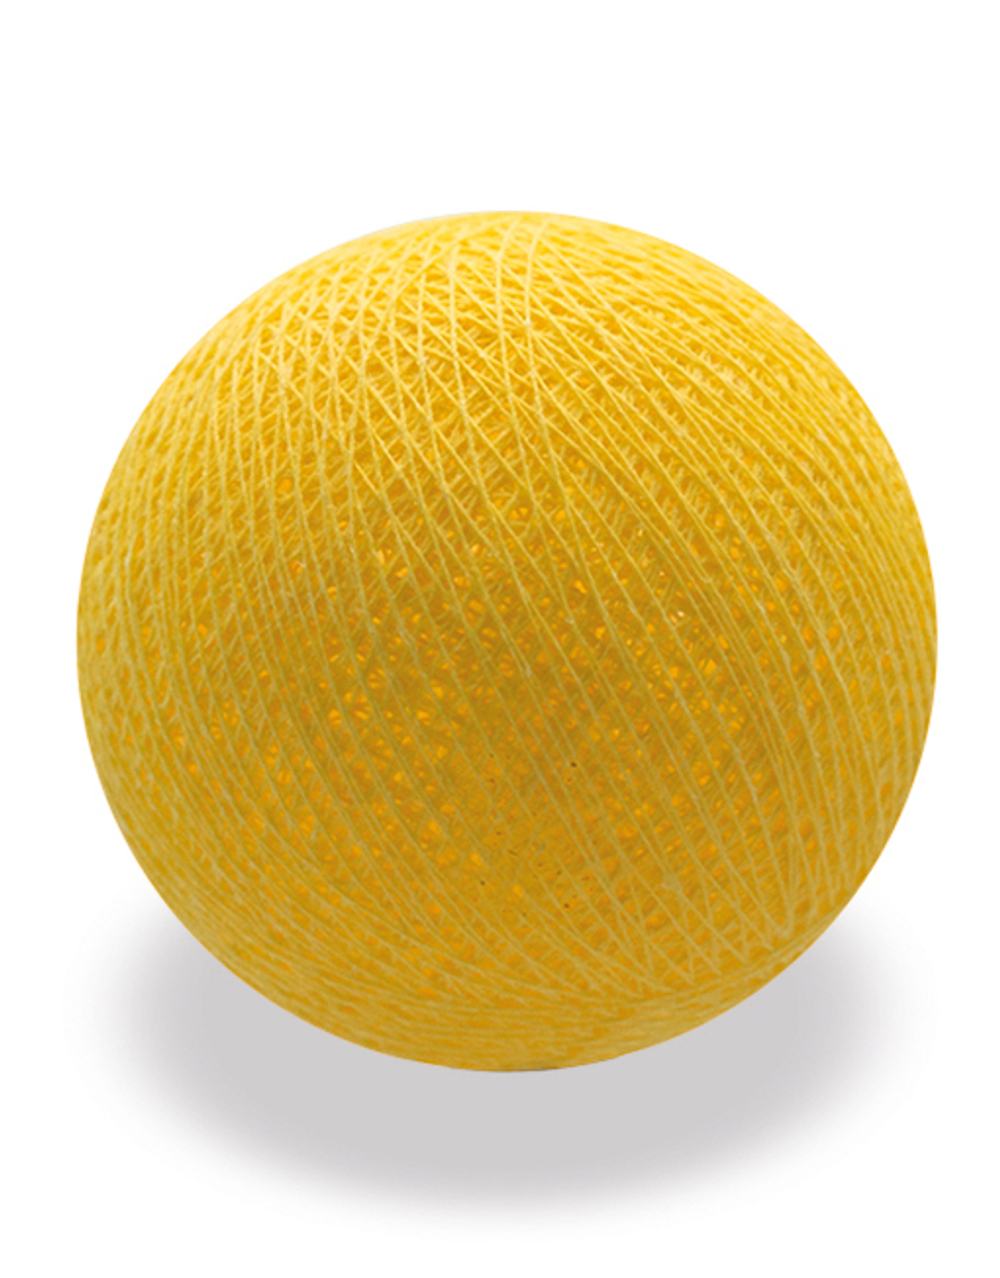 Хлопковый шарик лимон